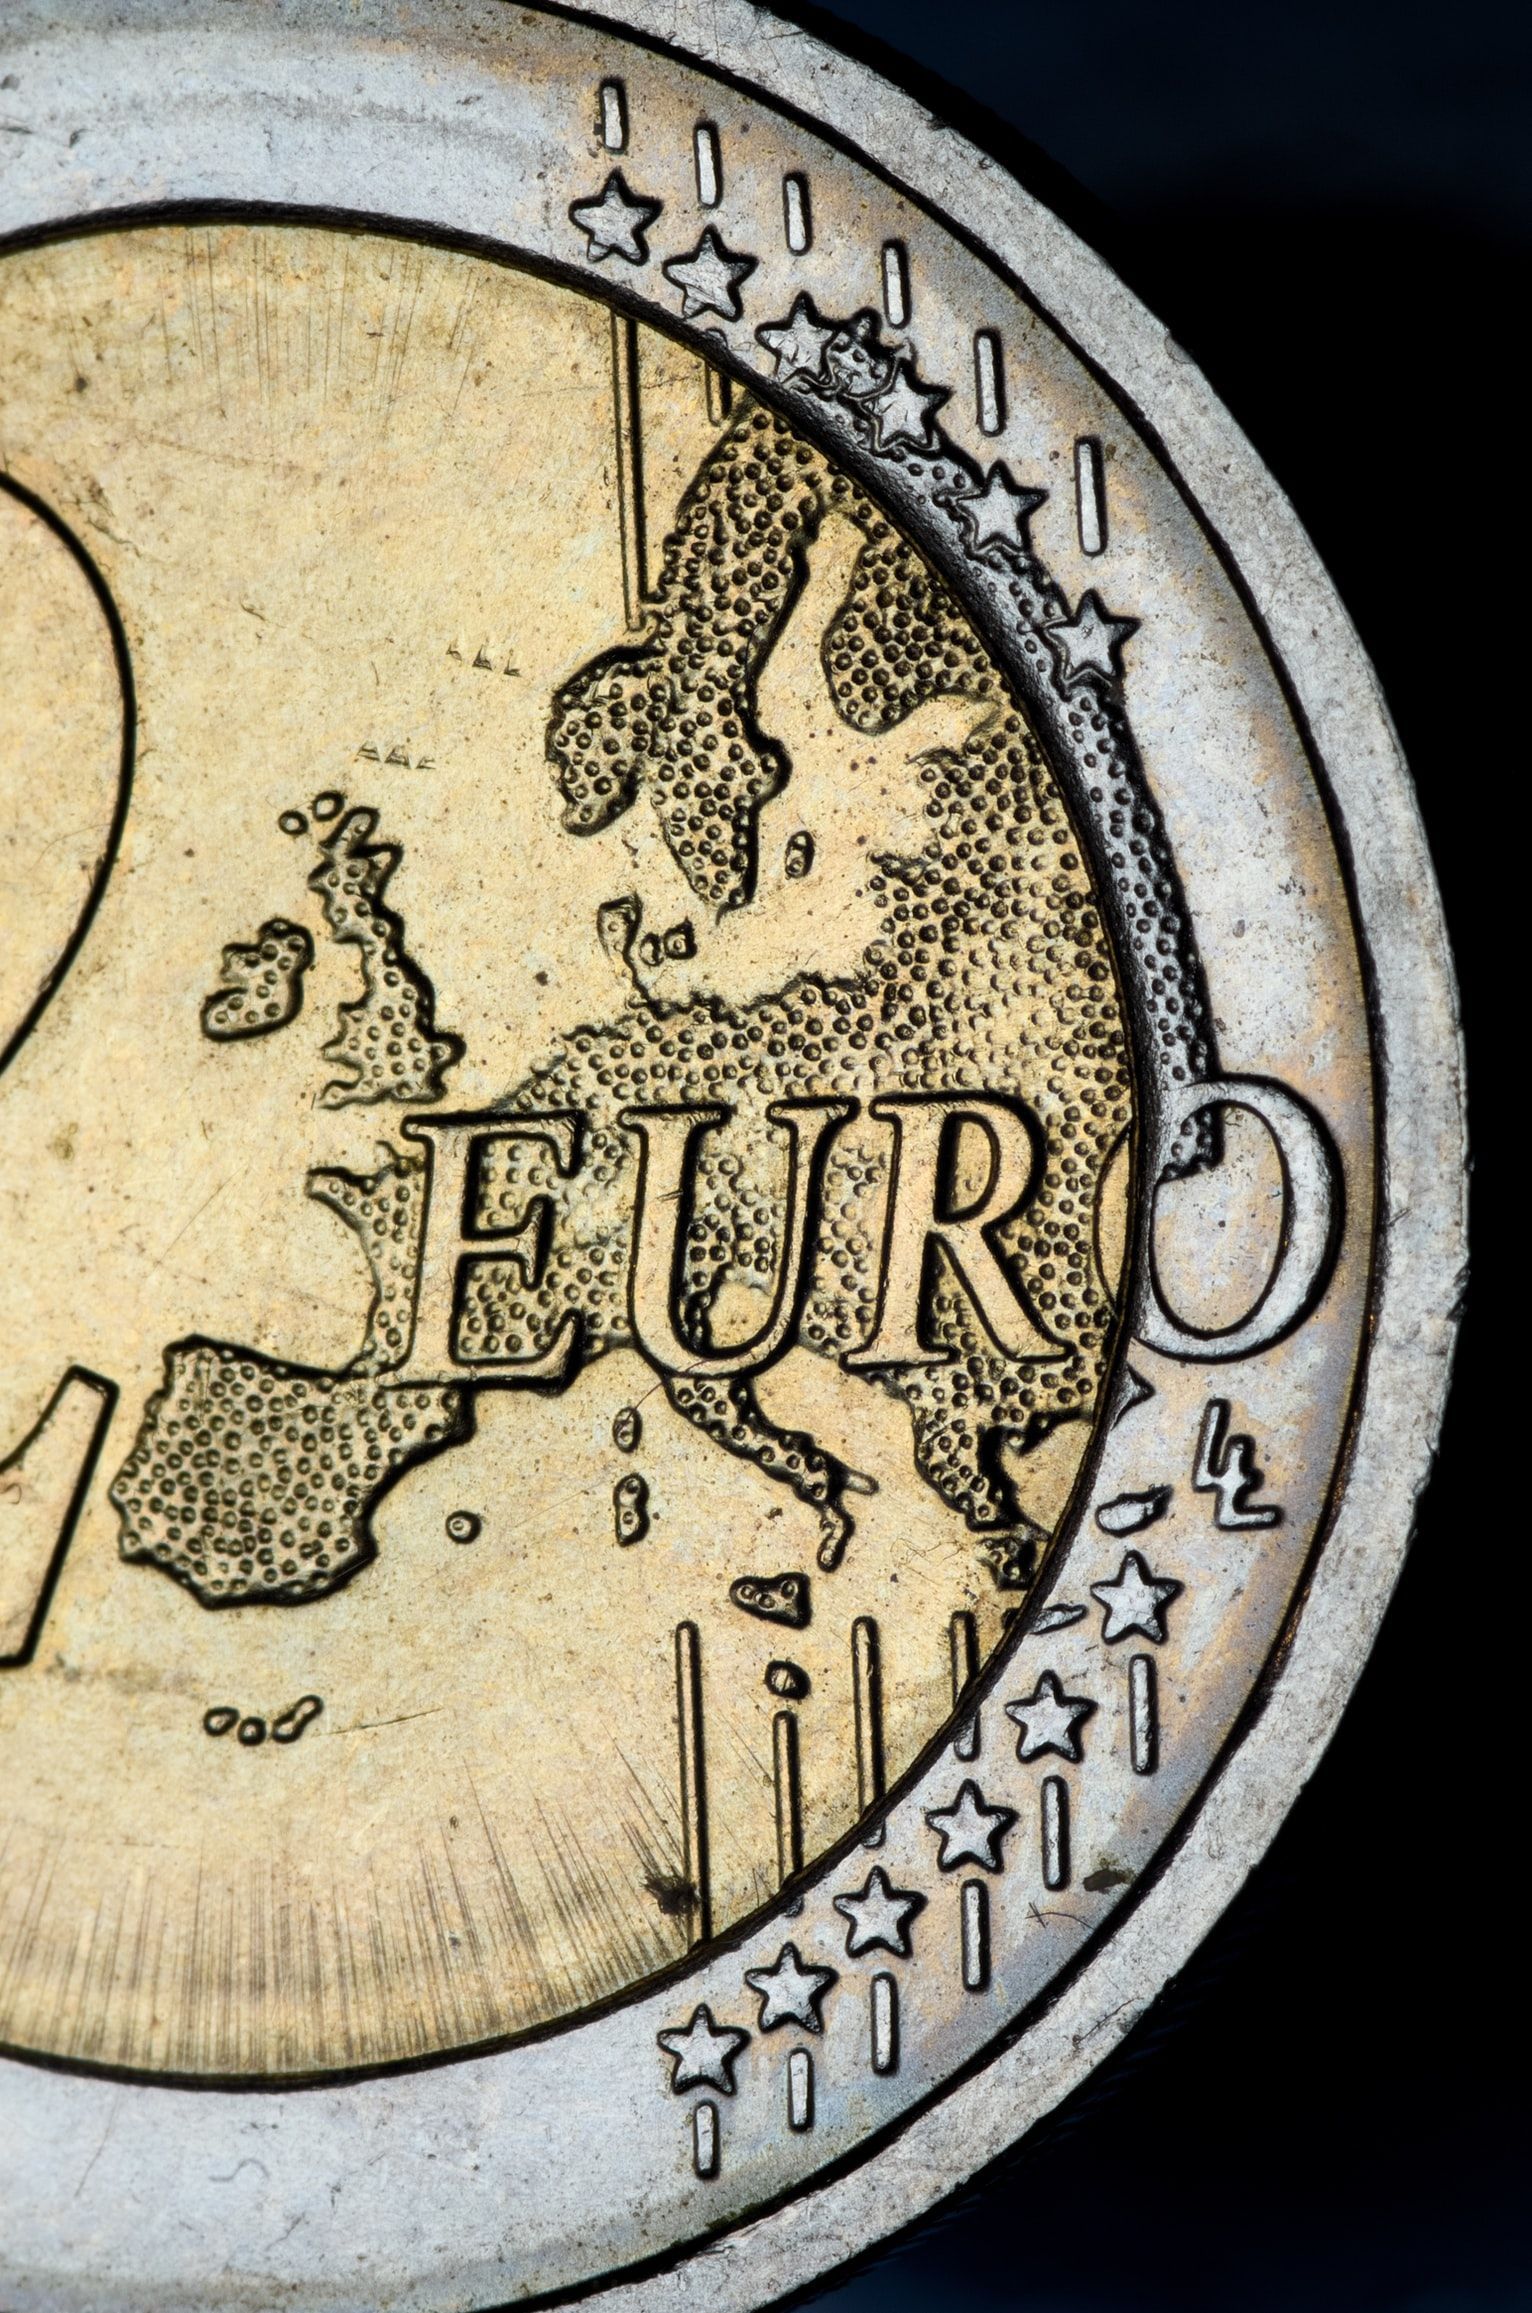 Отмена экономических стимулов: аналитики рассказали, когда ЕЦБ может начать этот процесс - Финансы